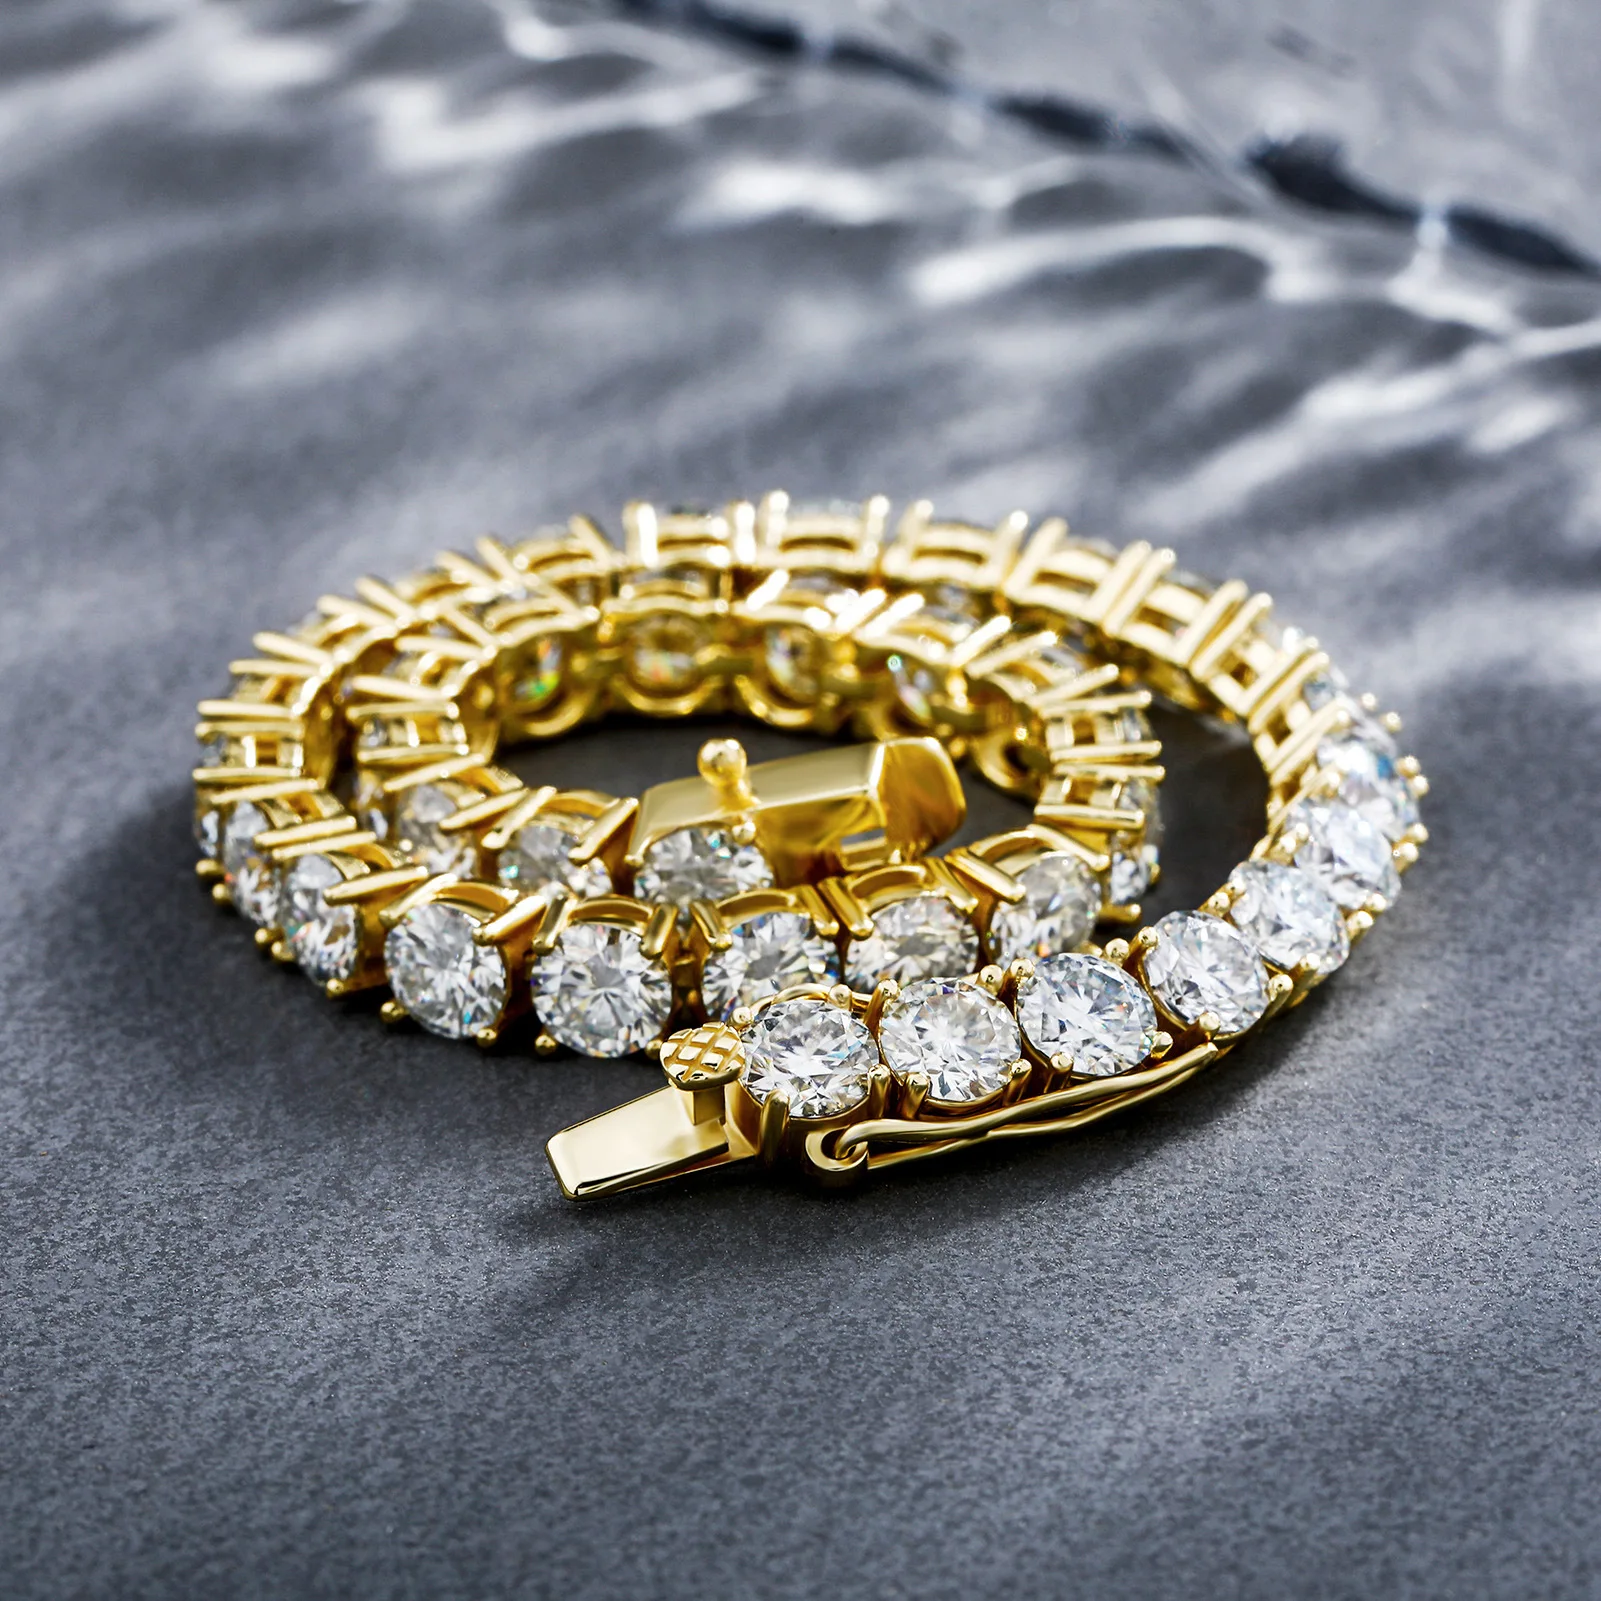 Pass Diamond Tester Moissanite Bracelet Men 3mm 4mm 5mm Moisssanite Tennis Chain Sterling Silver 925 Jewellery